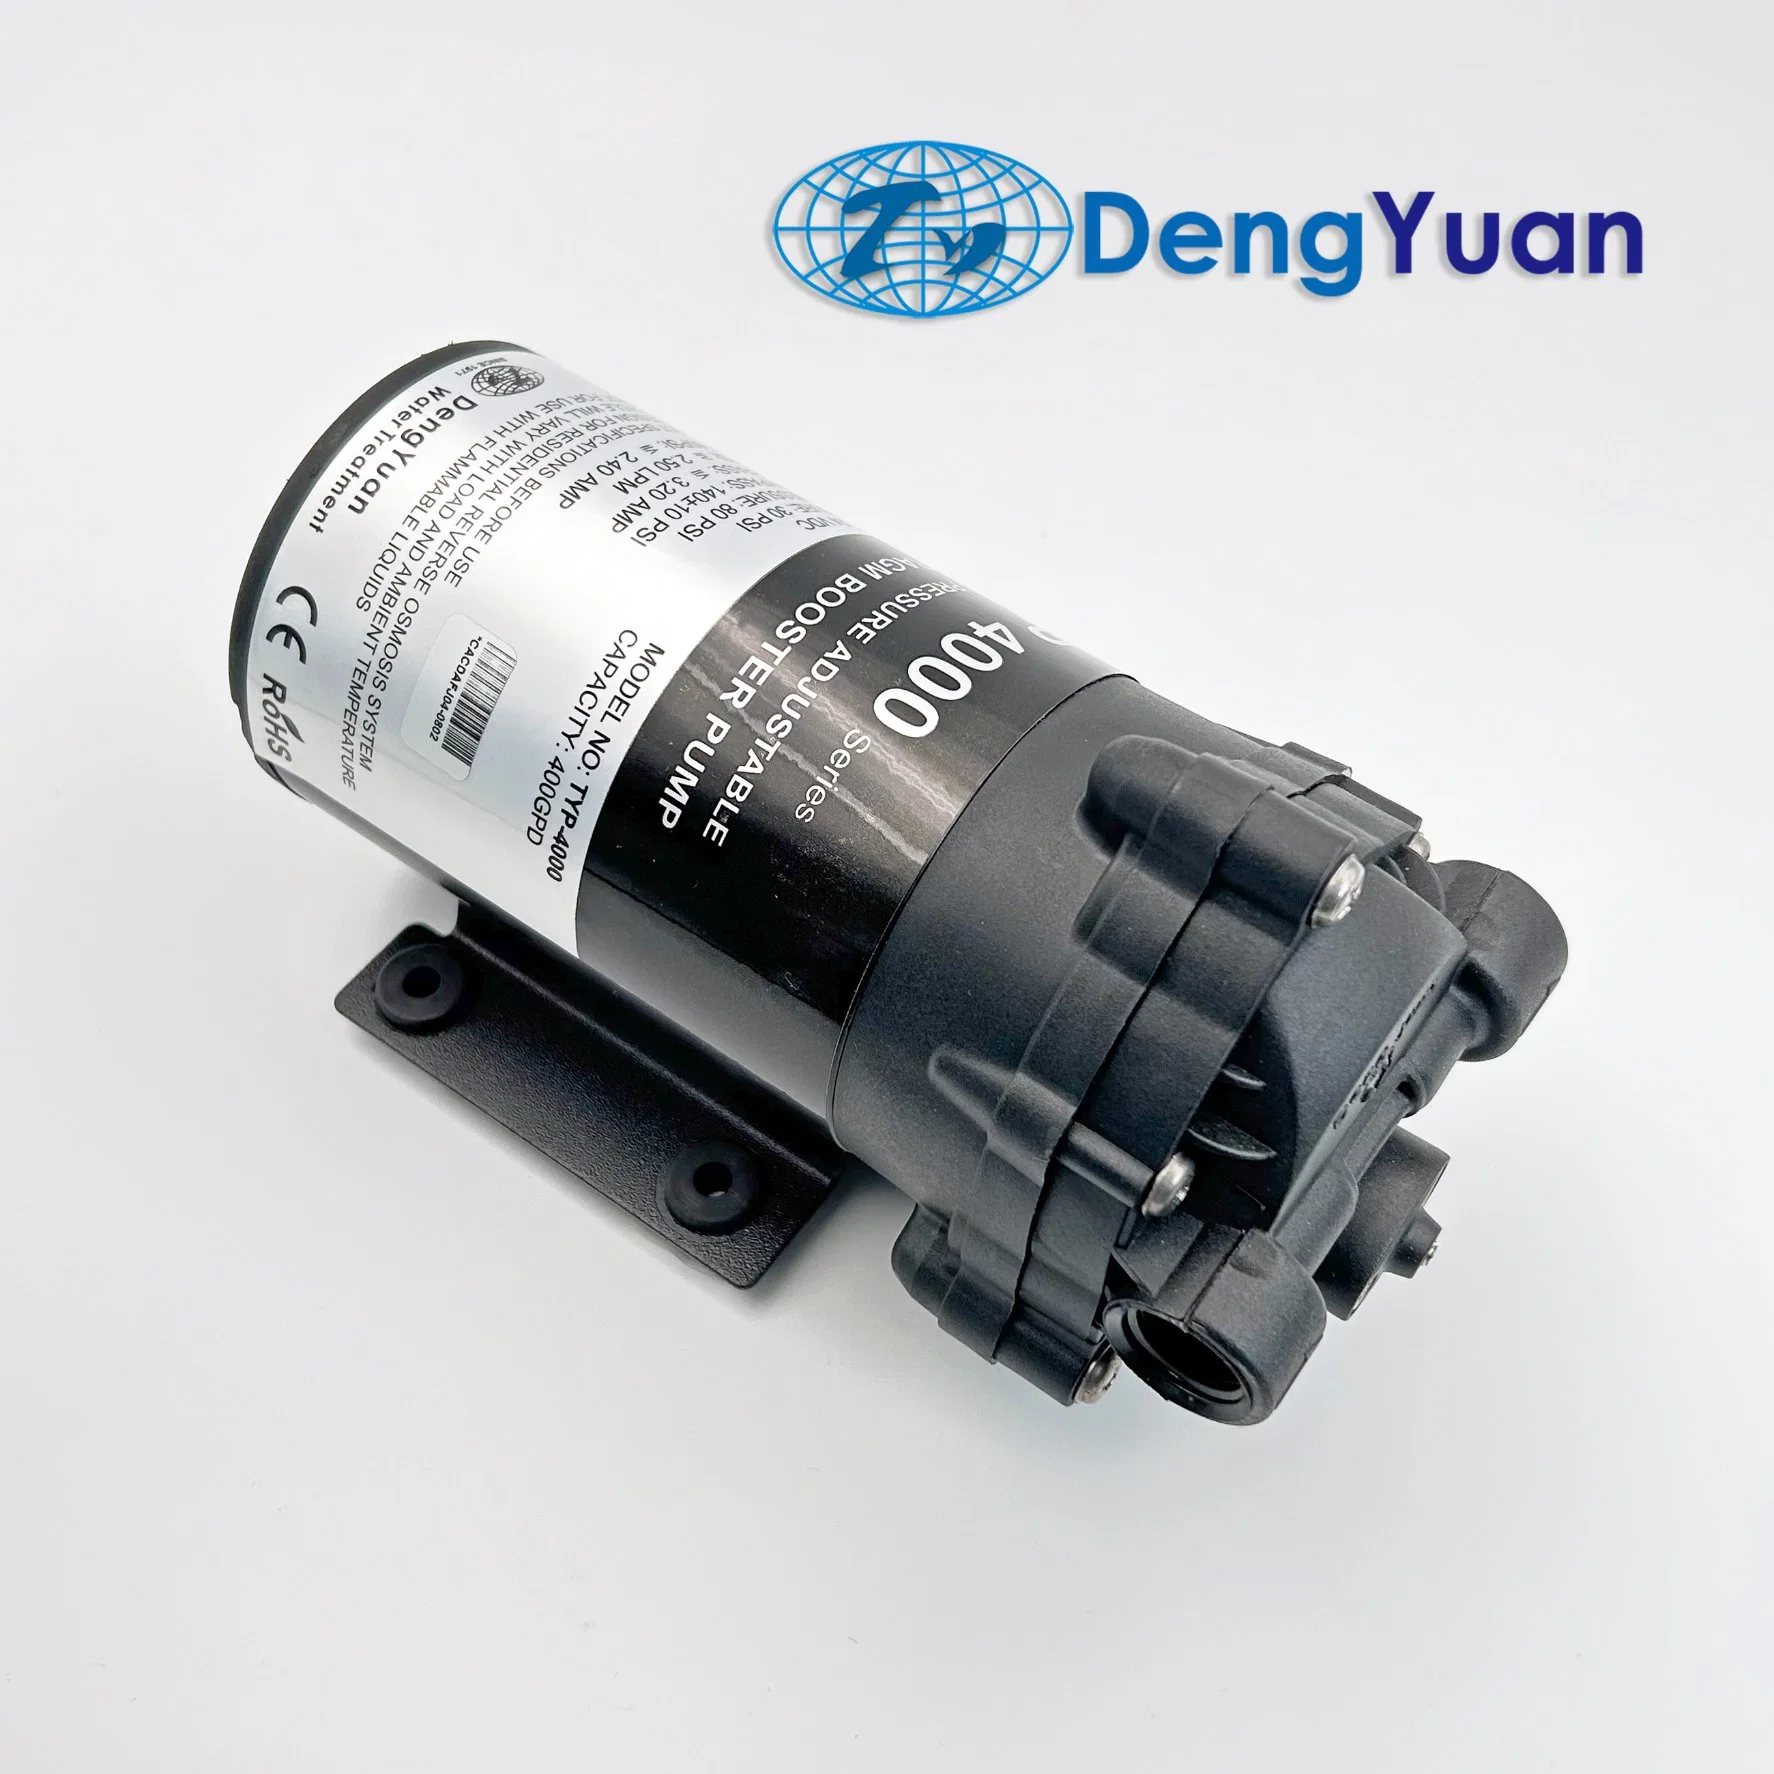 400gpd, bomba de refuerzo de agua Deng Yuan, para bomba de agua de ósmosis inversa/máquina de pulverización de alta presión, fábrica de fabricantes